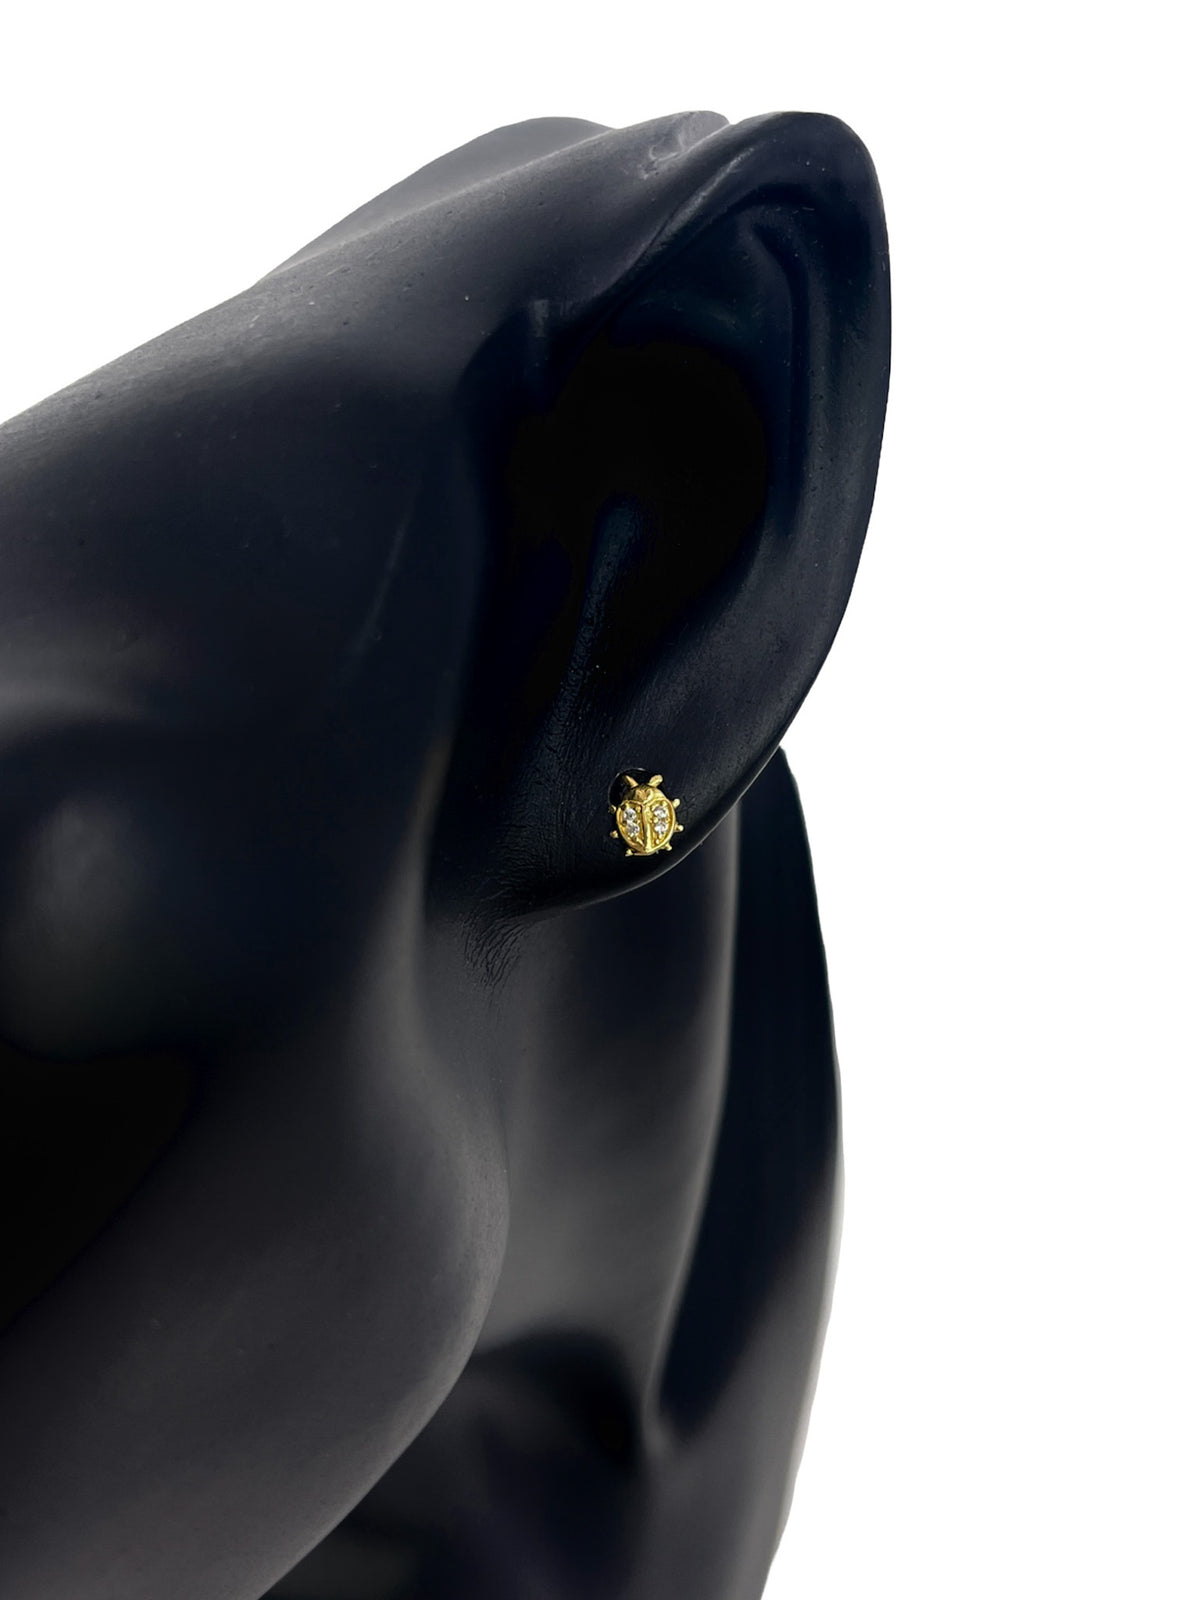 10K Yellow Gold Cubic Zirconia Ladybug  Stud Earrings with Screw Backs - 6.0 x 5.5mm